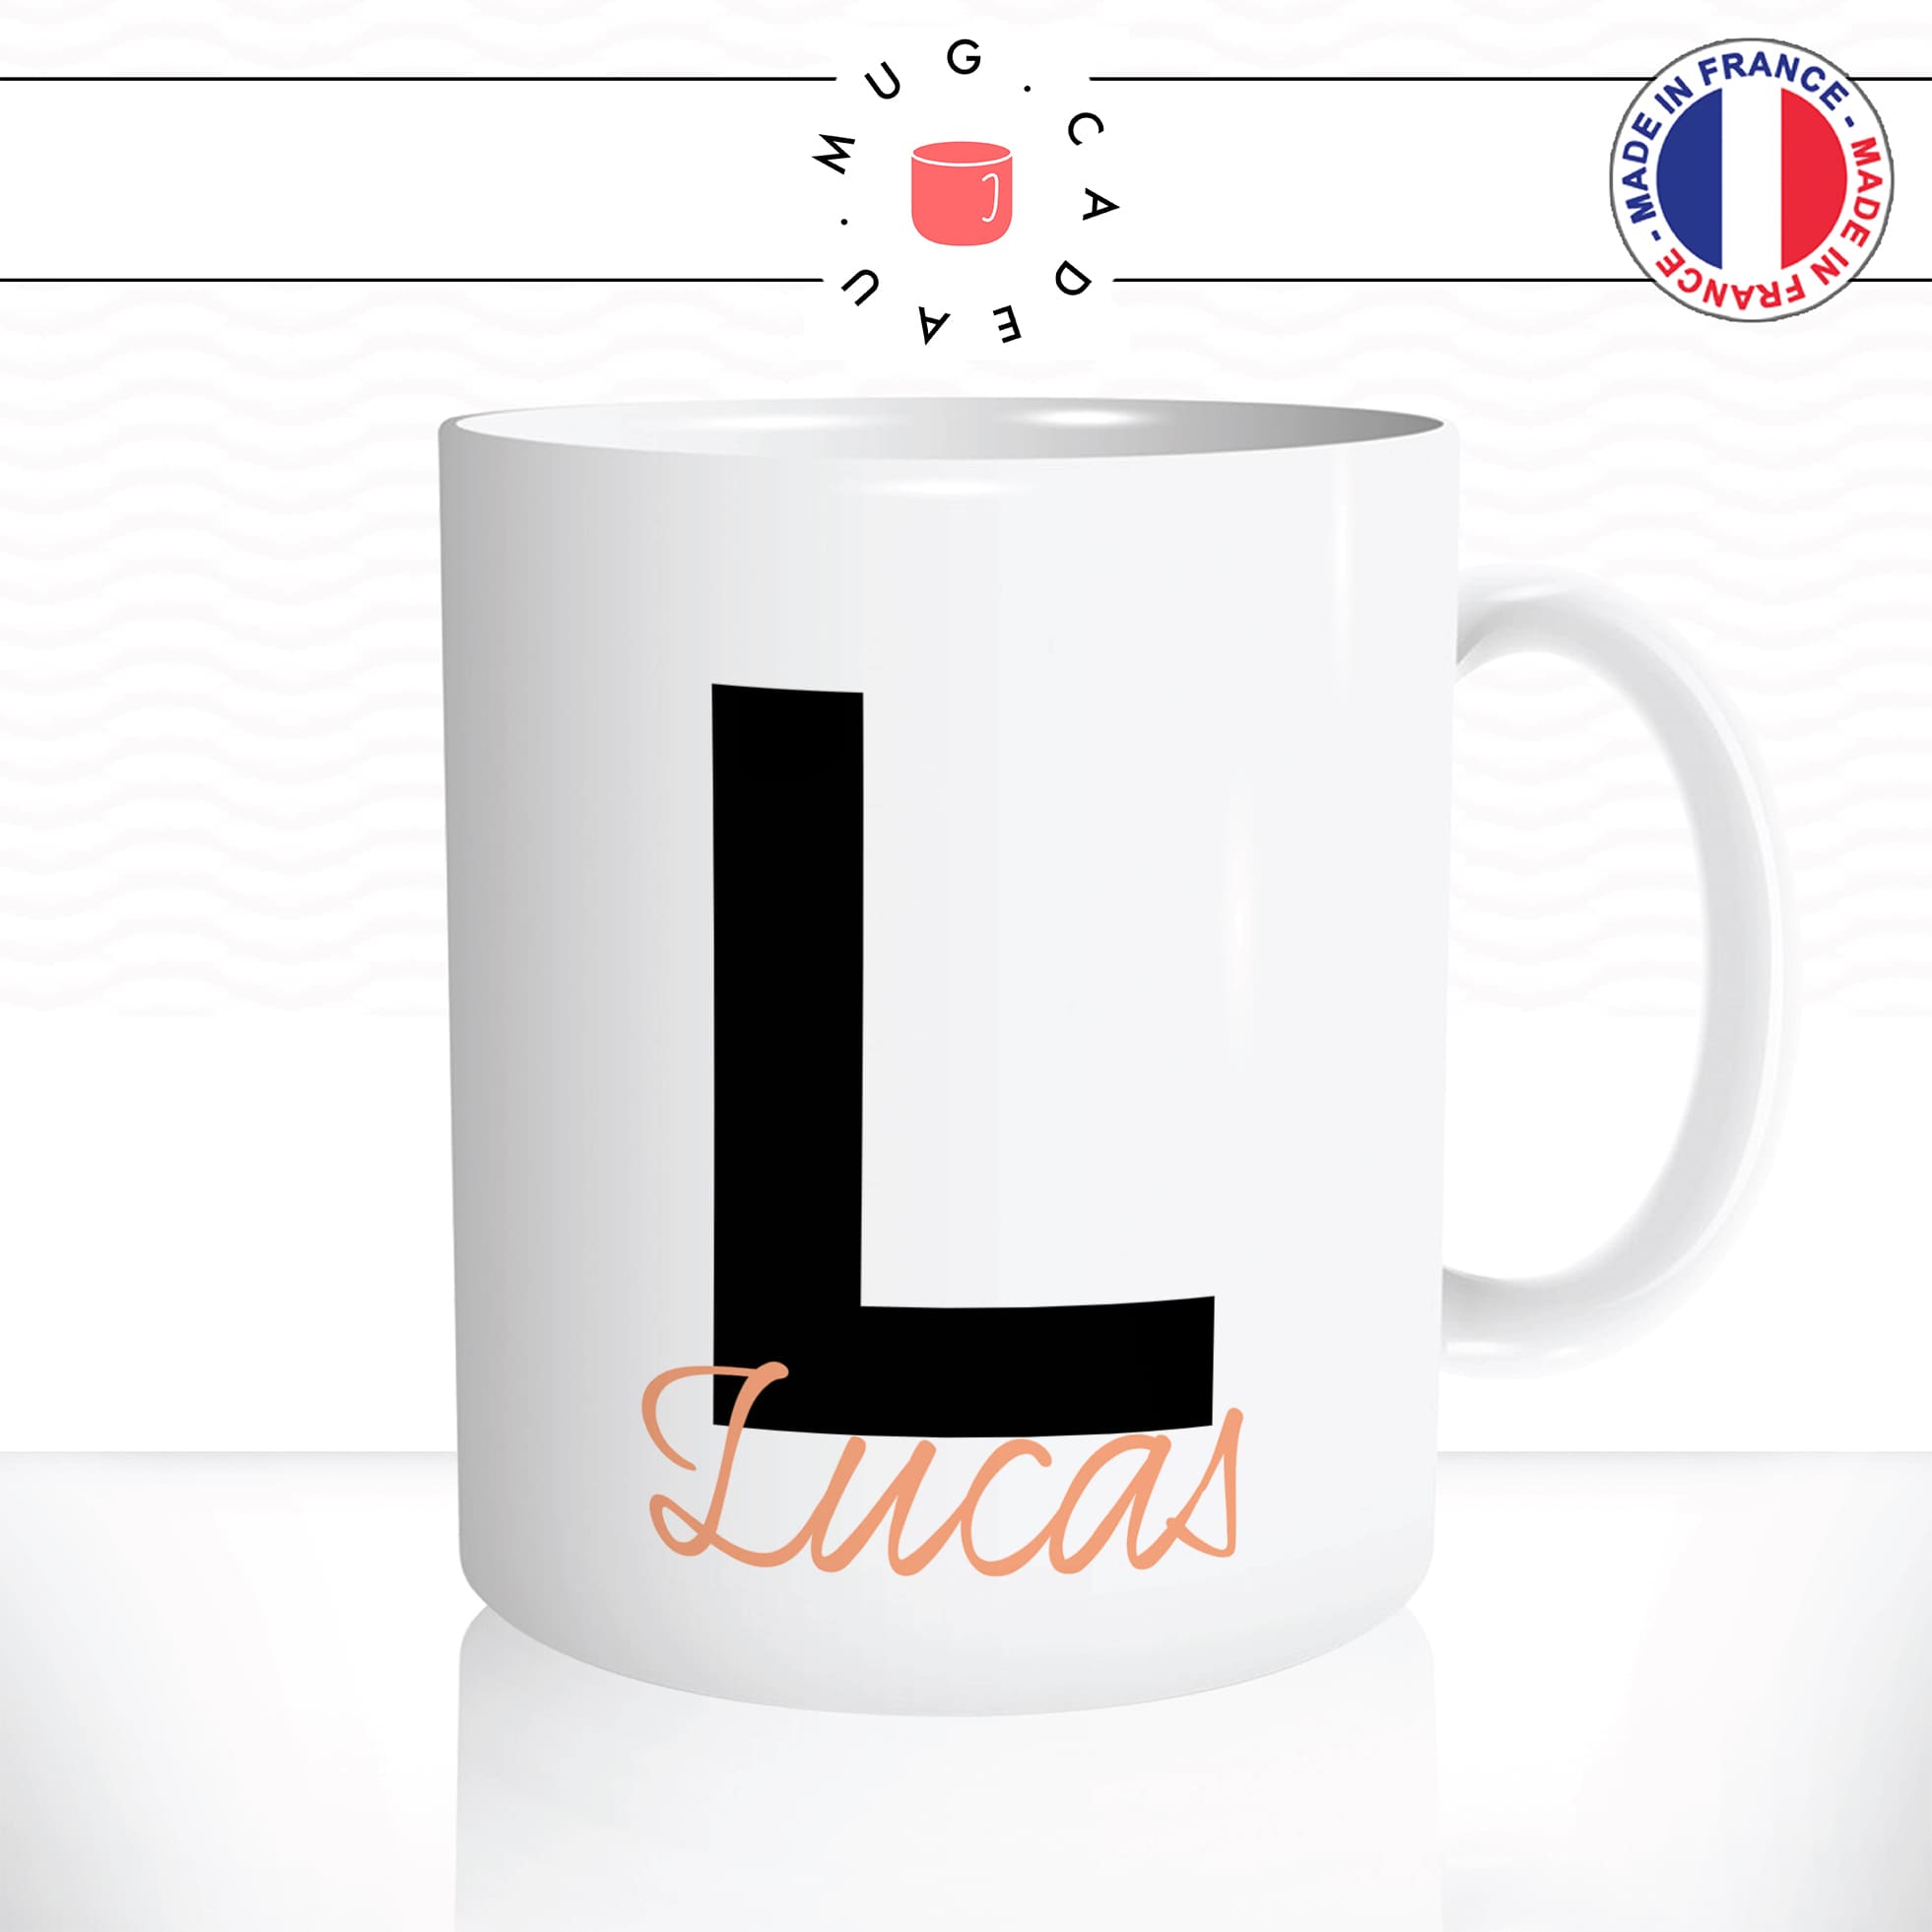 mug-tasse-blanche-lettre-noire-orange-prenom-personnalisable-decoration-boho-chic-mode-original-fun-collegue-idée-cadeau-cool-offrir-café-thé2